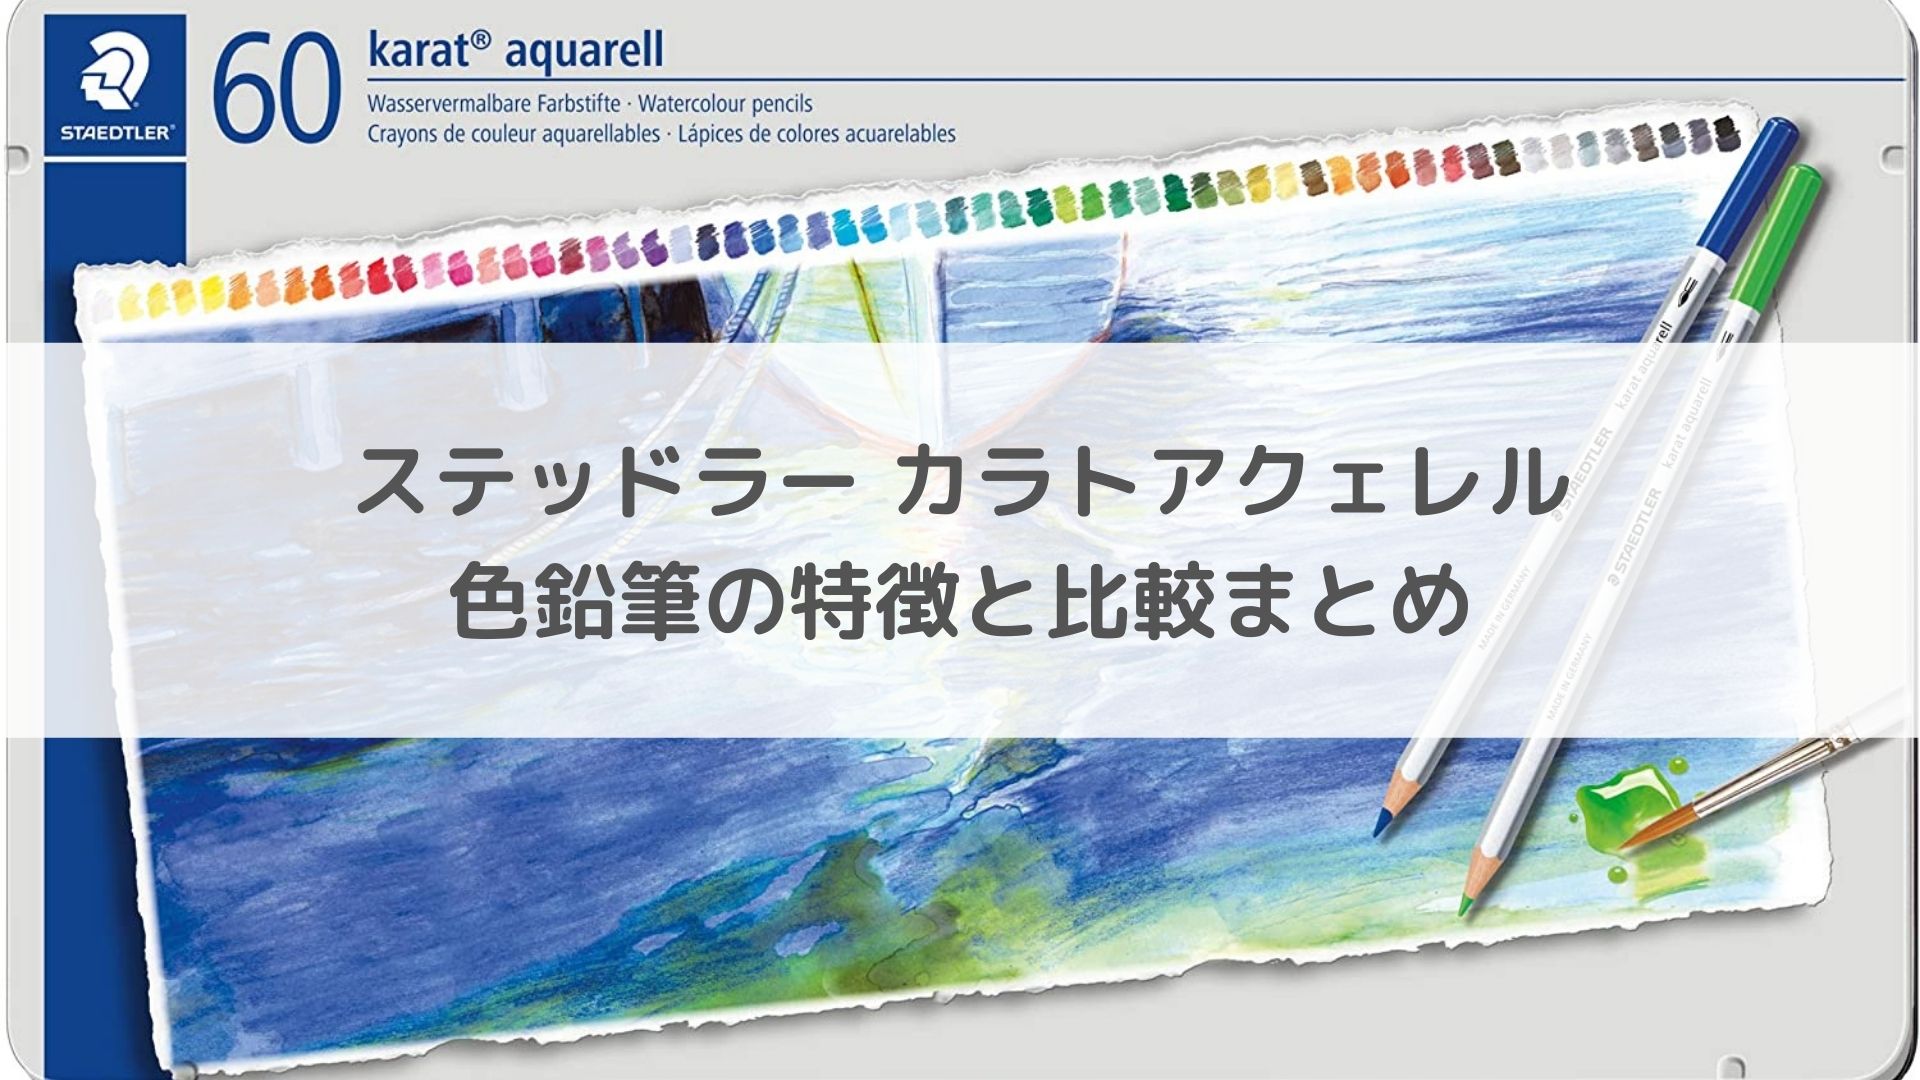 ステッドラー カラトアクェレル水彩色鉛筆の特徴と比較まとめ | アートと日常